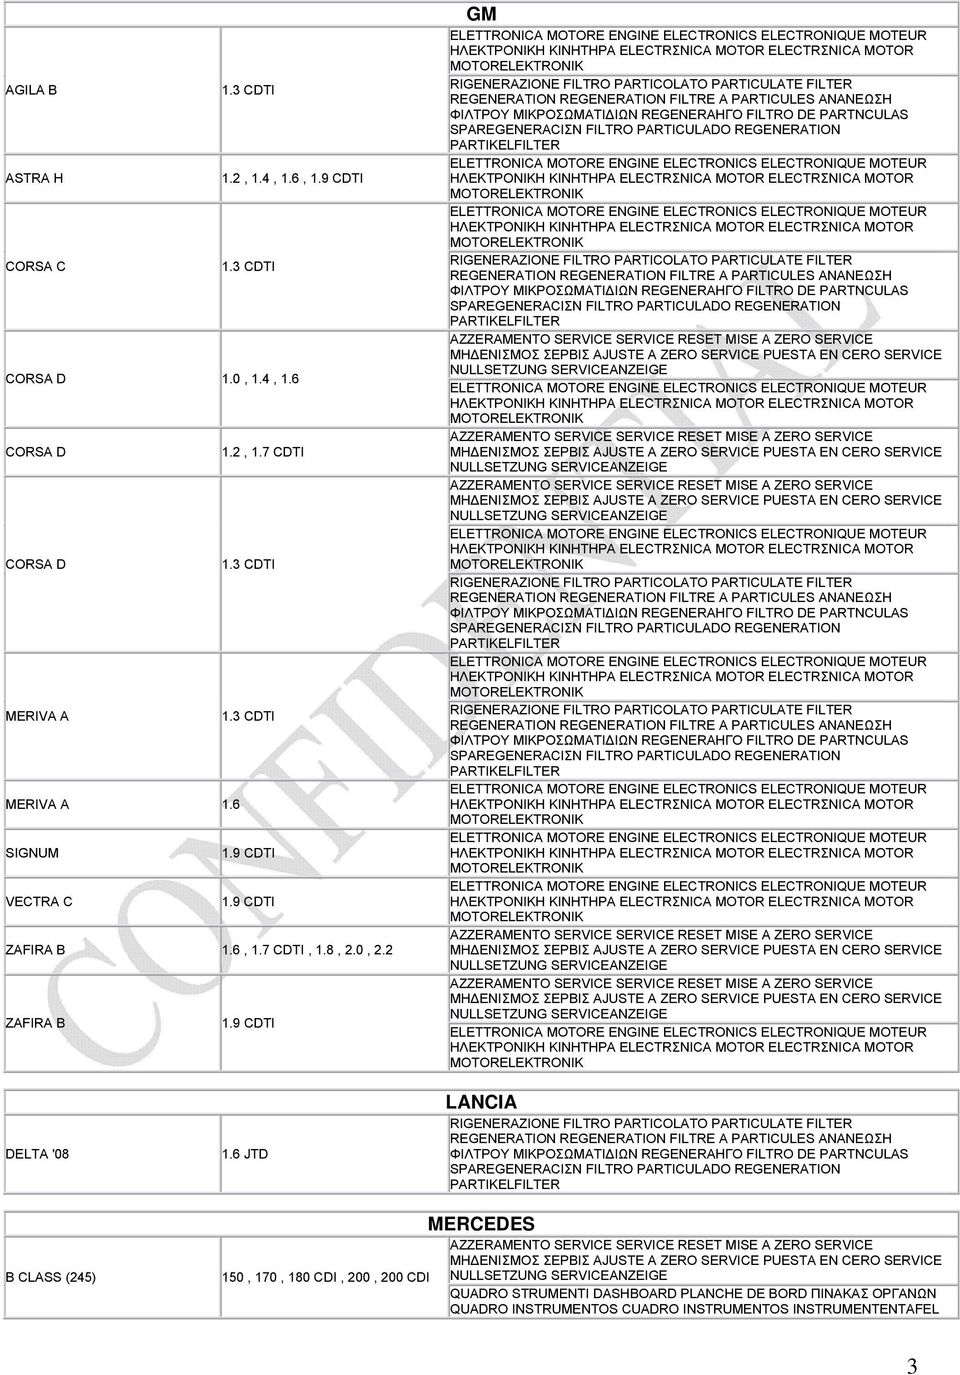 6 JTD LANCIA B CLASS (245) 150, 170, 180 CDI, 200, 200 CDI MERCEDES QUADRO STRUMENTI